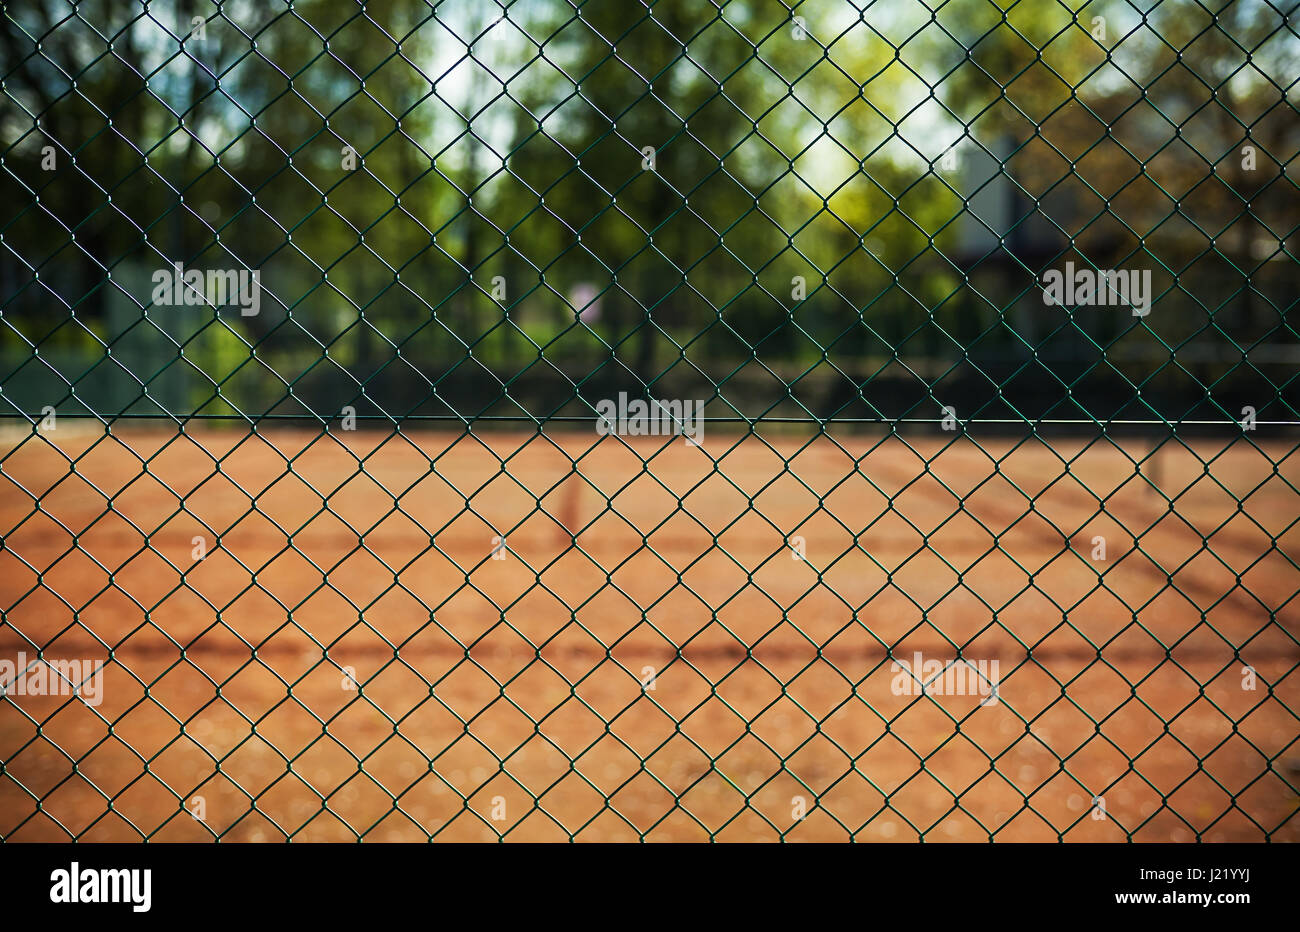 Vue rapprochée sur la clôture métallique de tennis. Banque D'Images